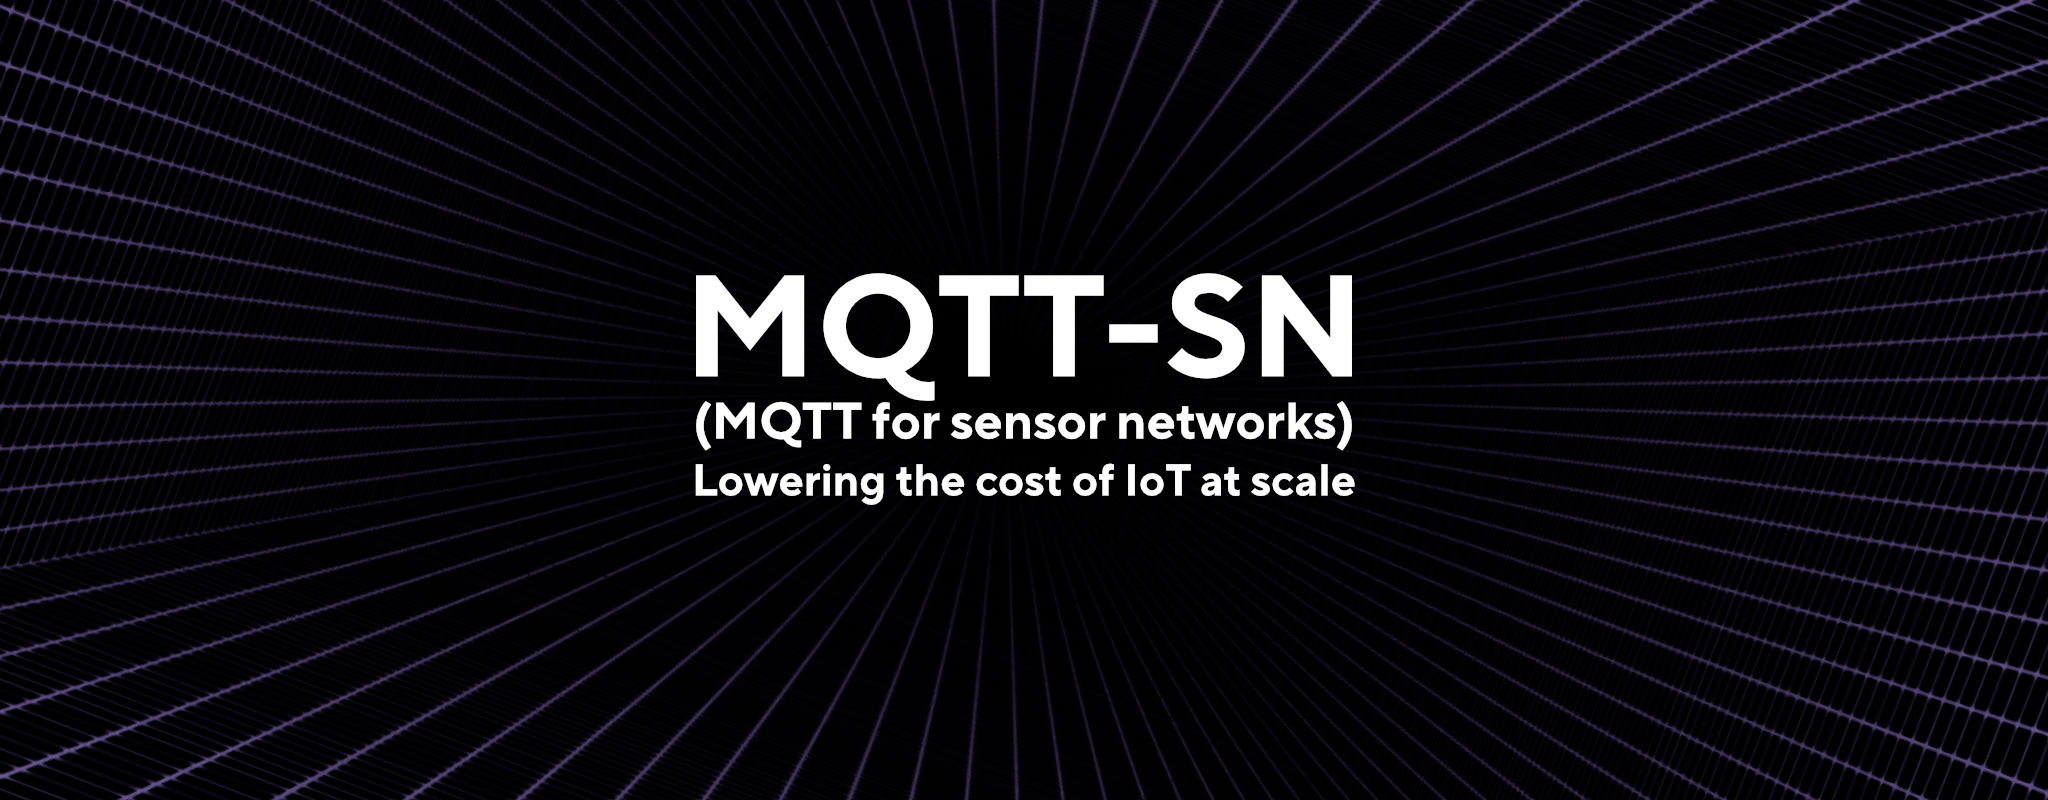 MQTT-SN:为工业物联网提供低功耗和可扩展的解决方案插图2